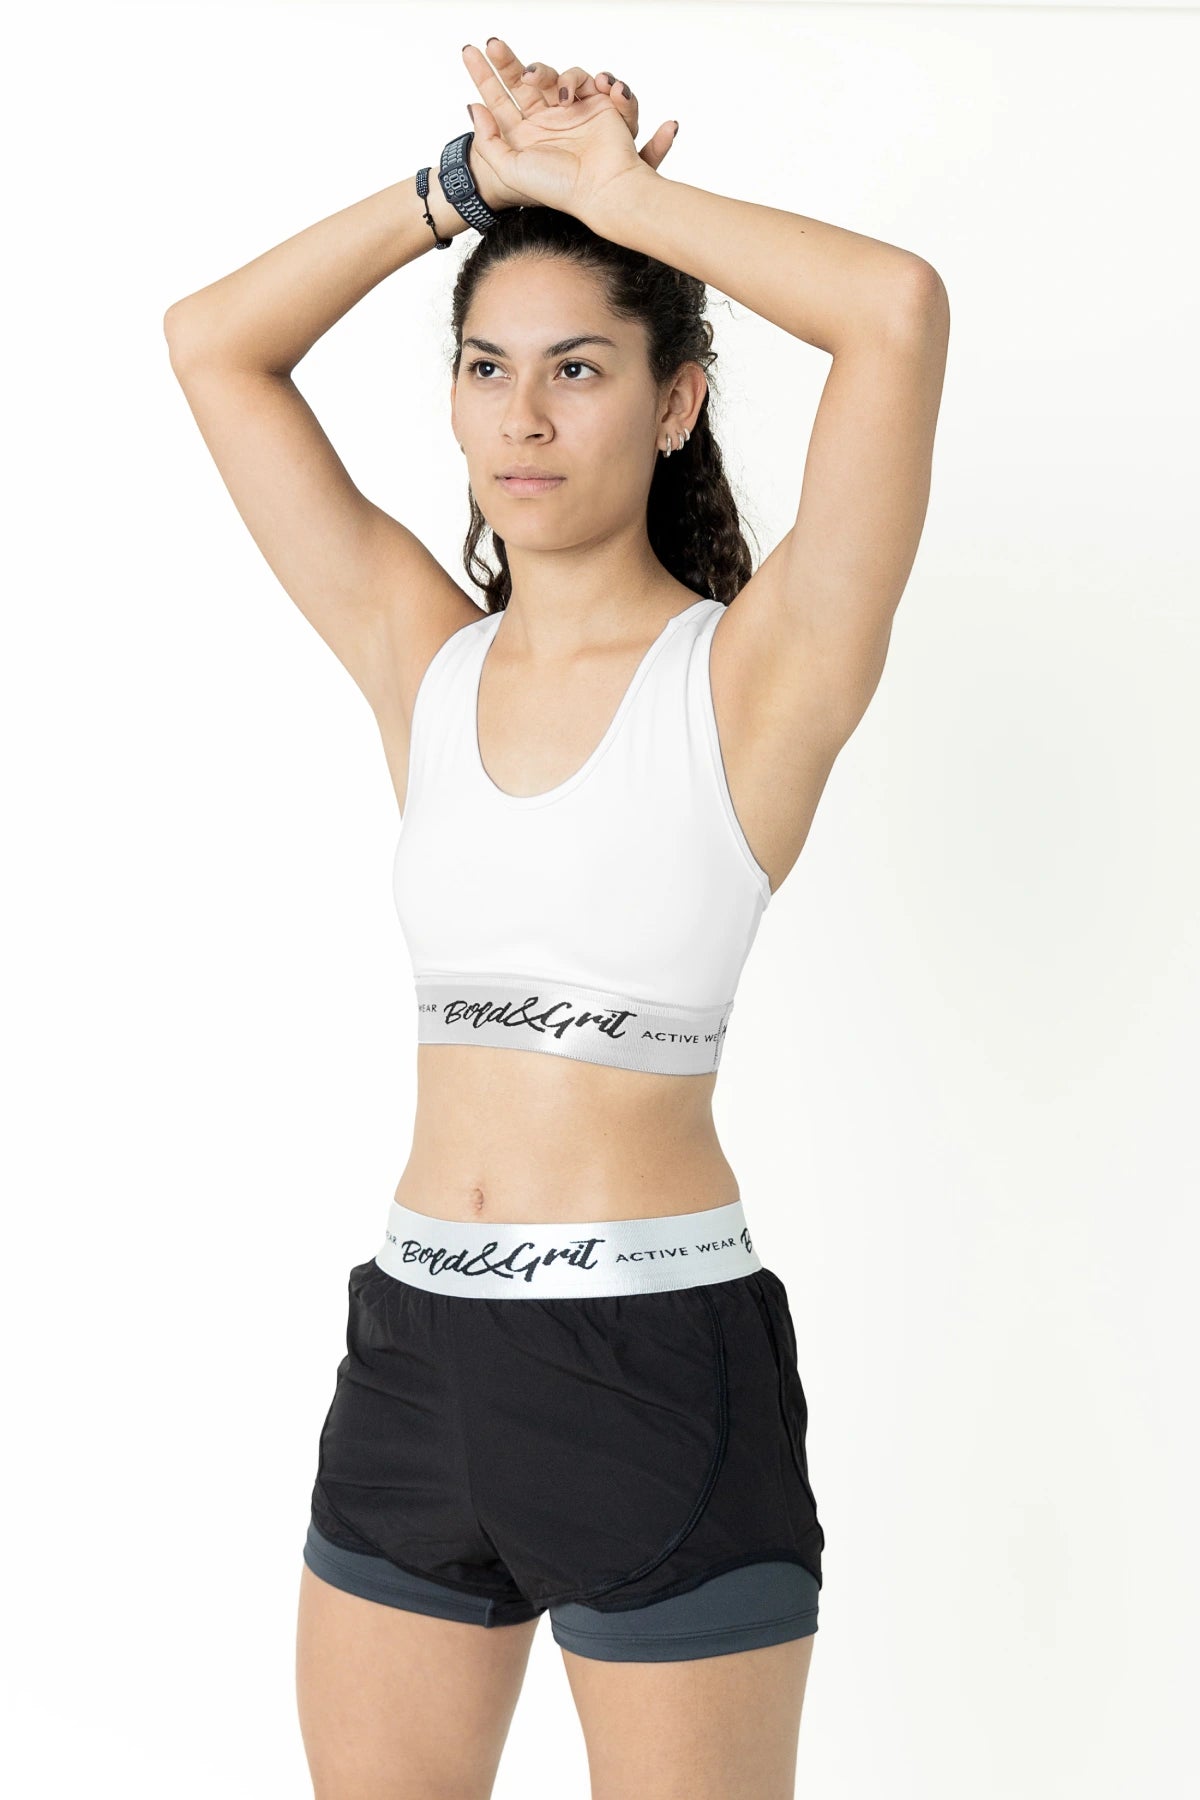 Women's Workout Clothes, Breathable & Fluid Resistant